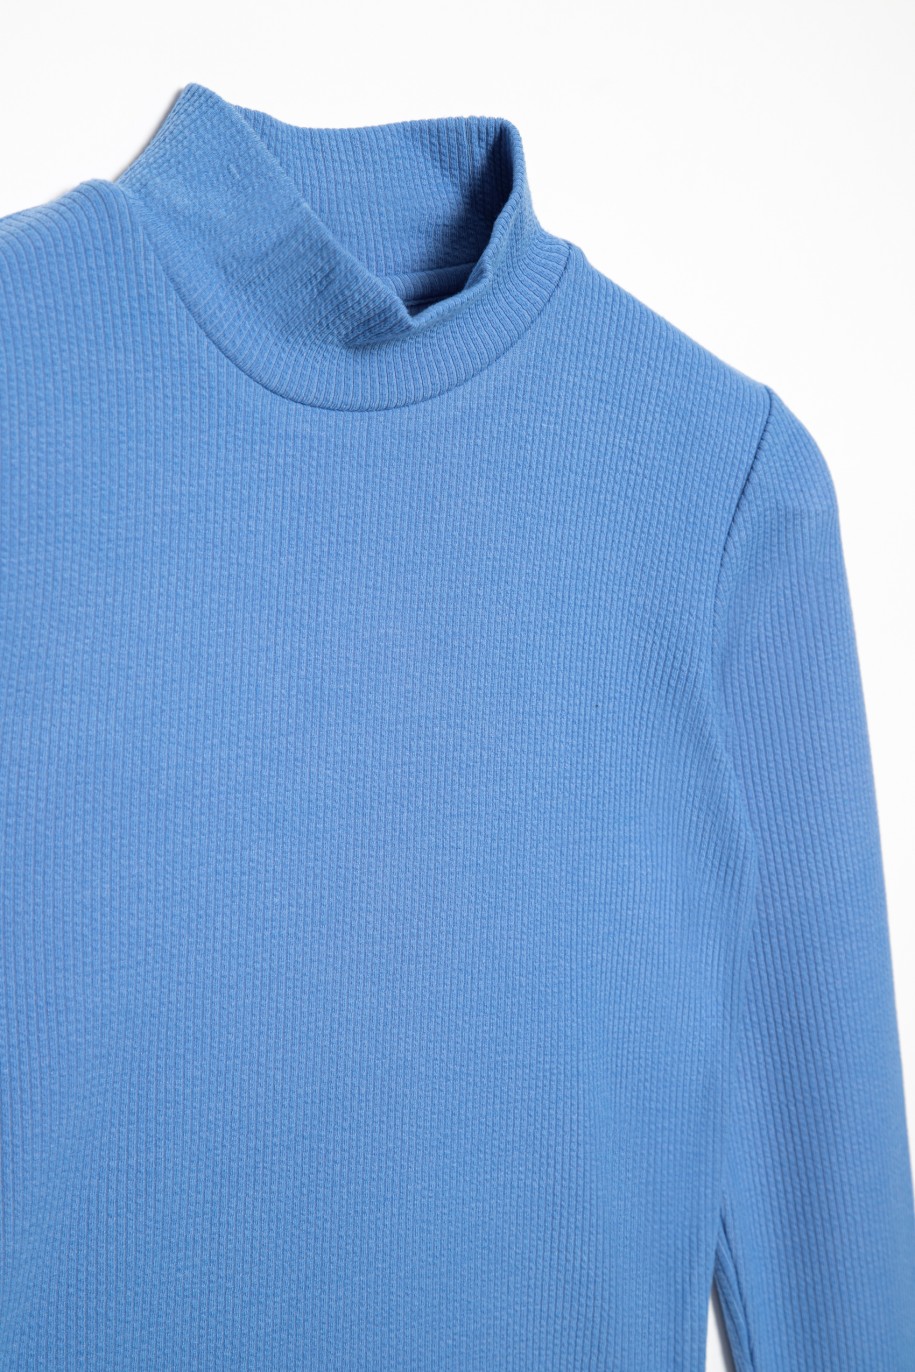 Niebieska bluzka dla dziewczyny - 31689